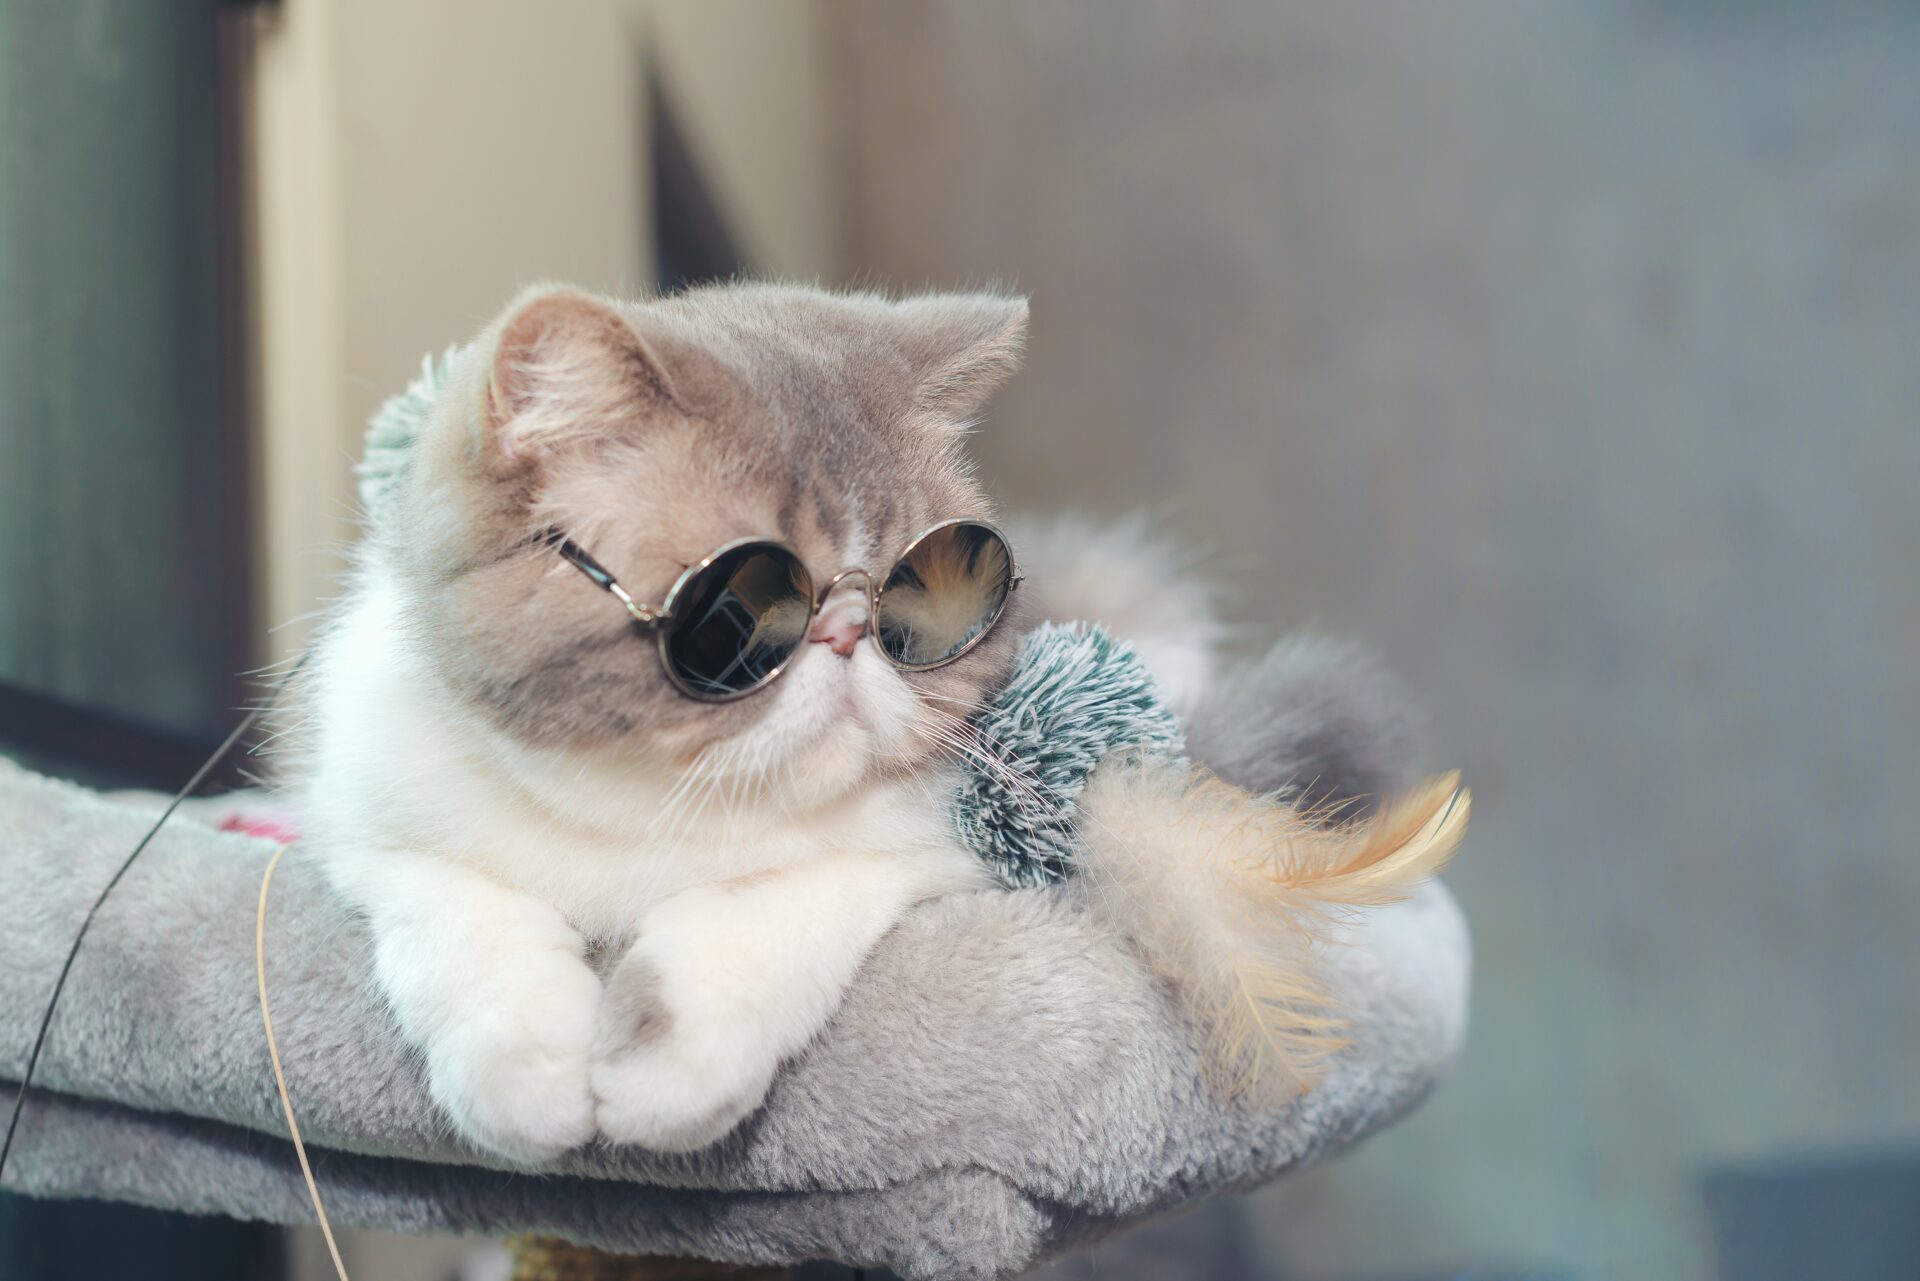 a cute cat wearing sunglasses